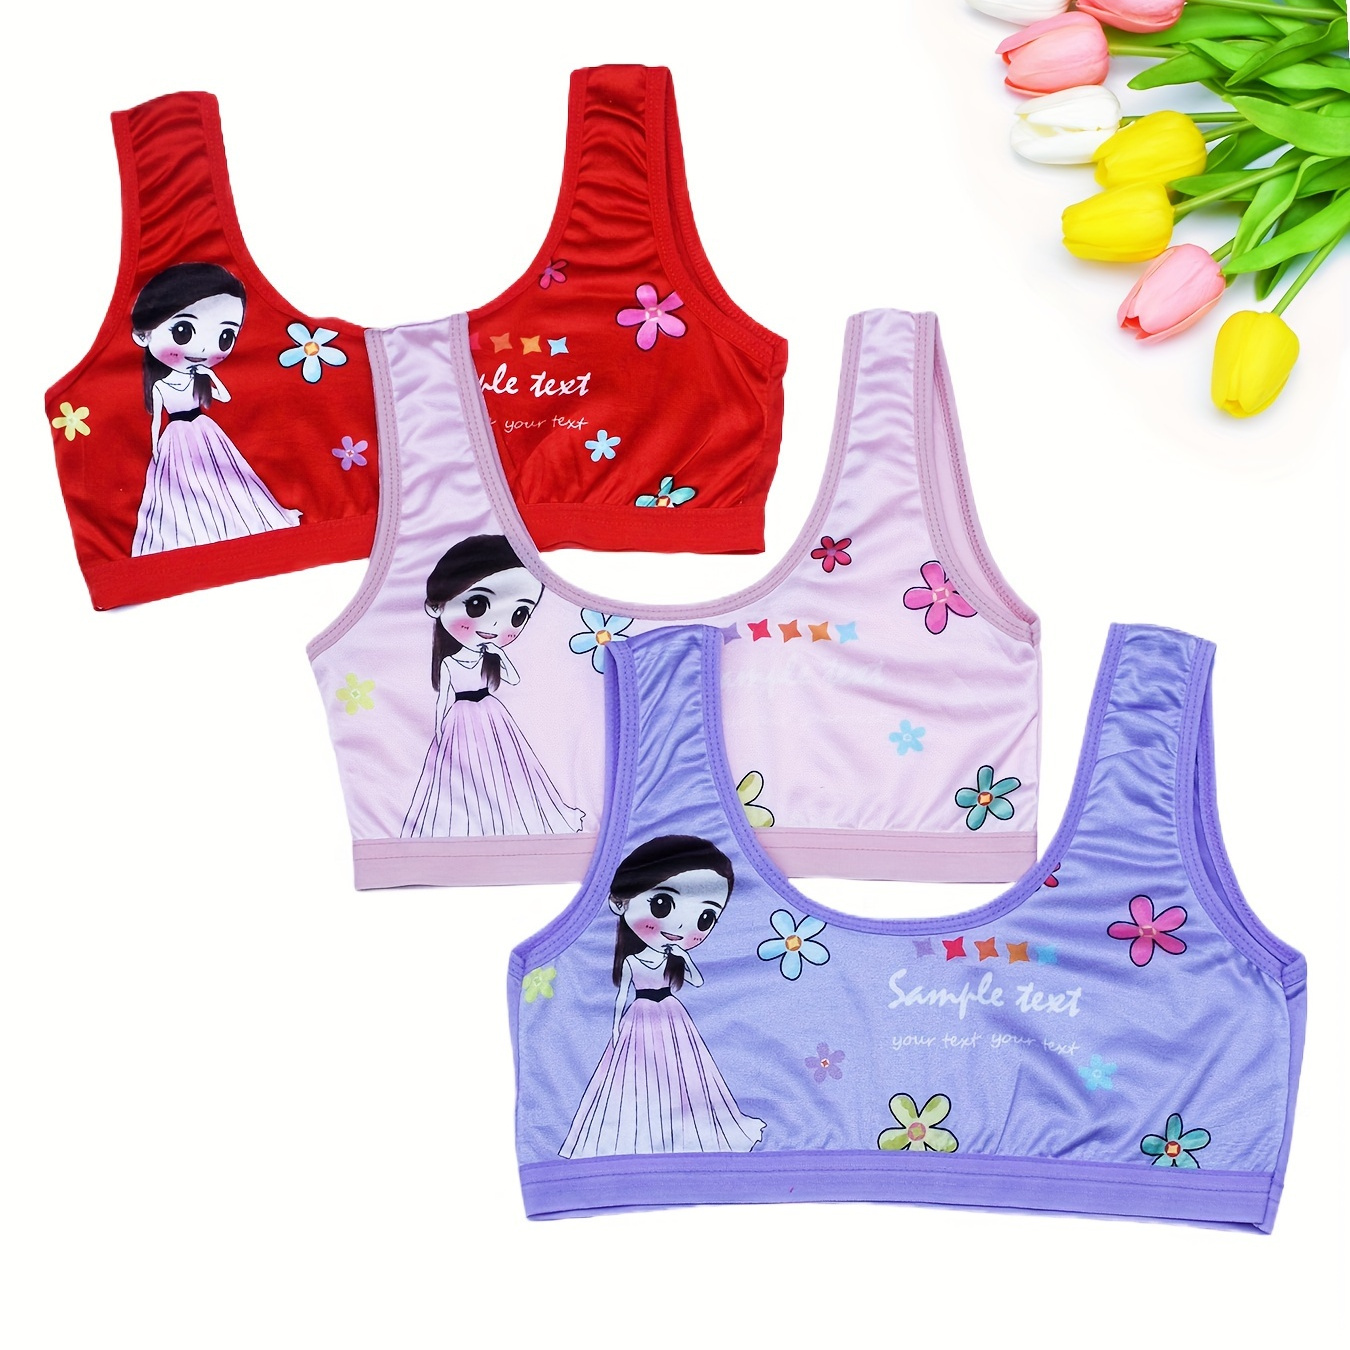 

3pcs Girls' Thin Girls Developmental Period Vest Set, Children's Underwear, Cartoon Bras For Girls And Students, 7-14 Years Old